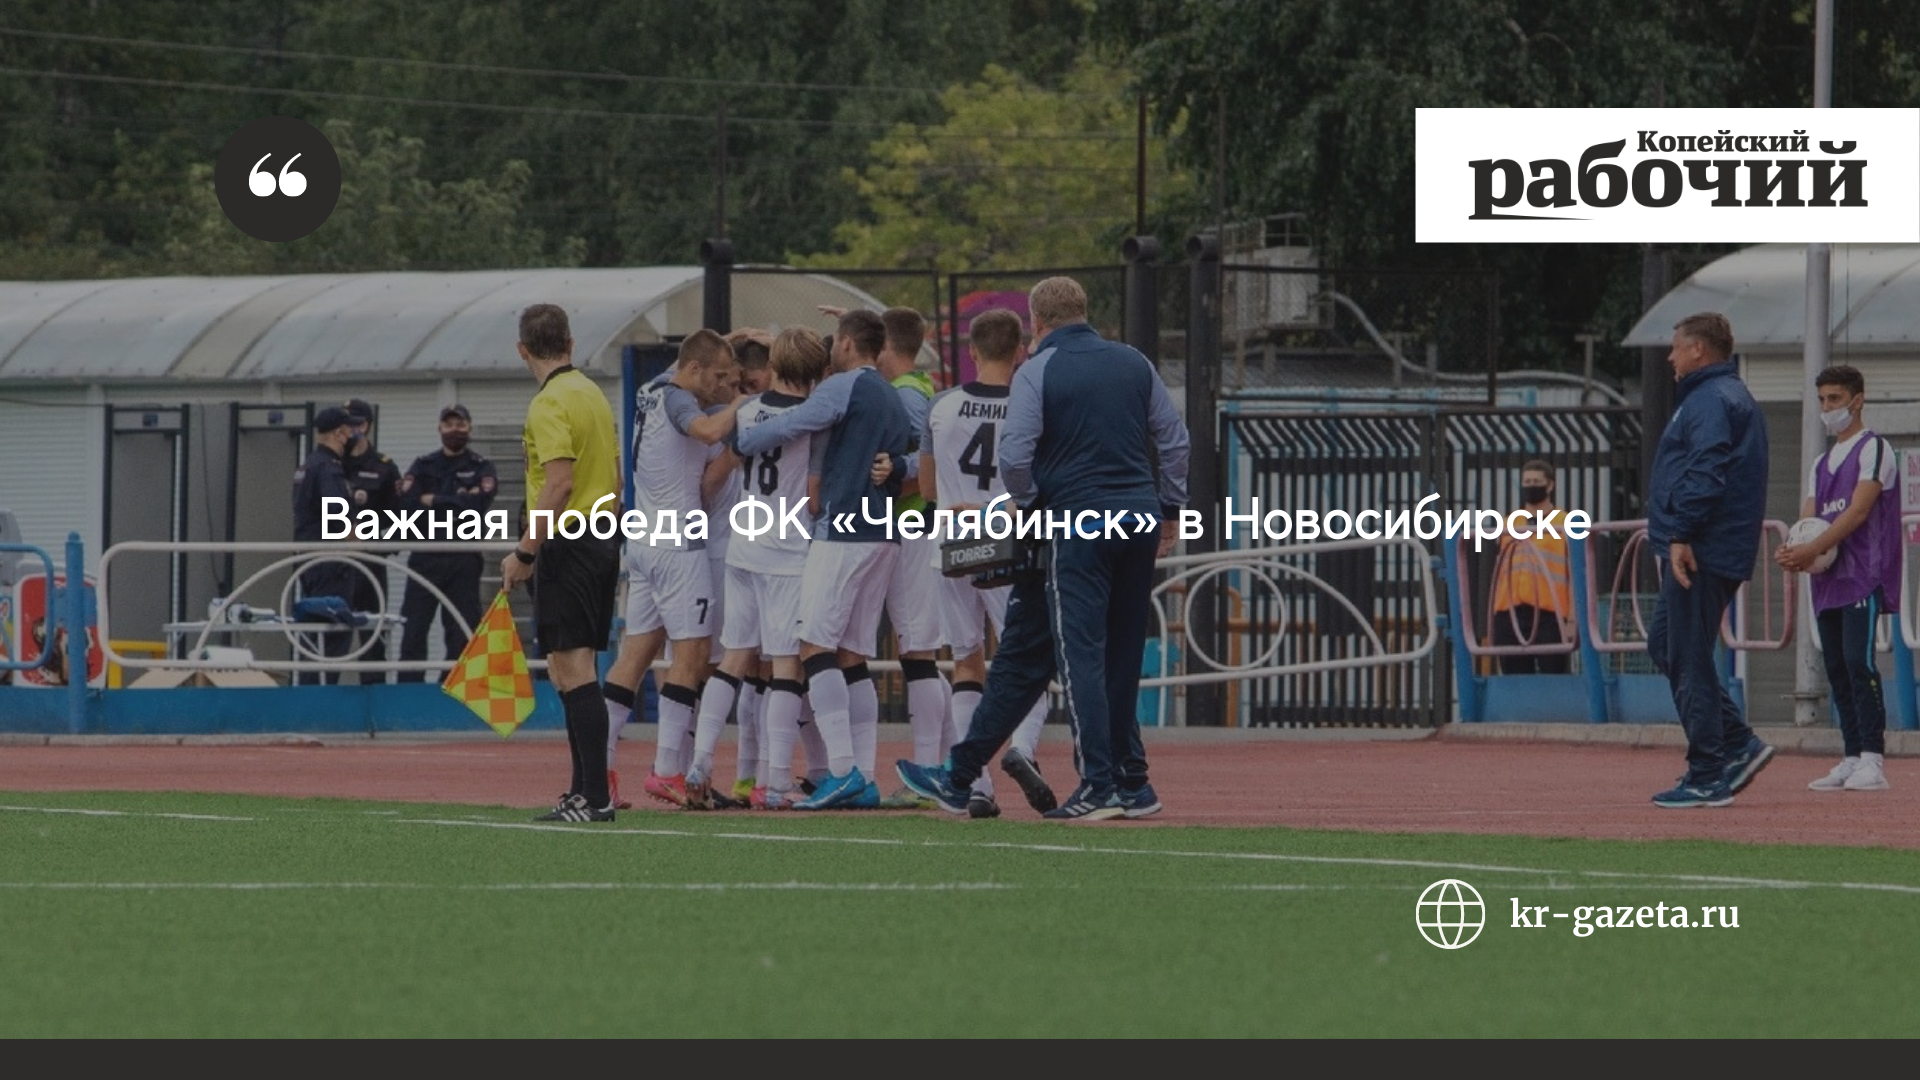 Важная победа ФК «Челябинск» в Новосибирске